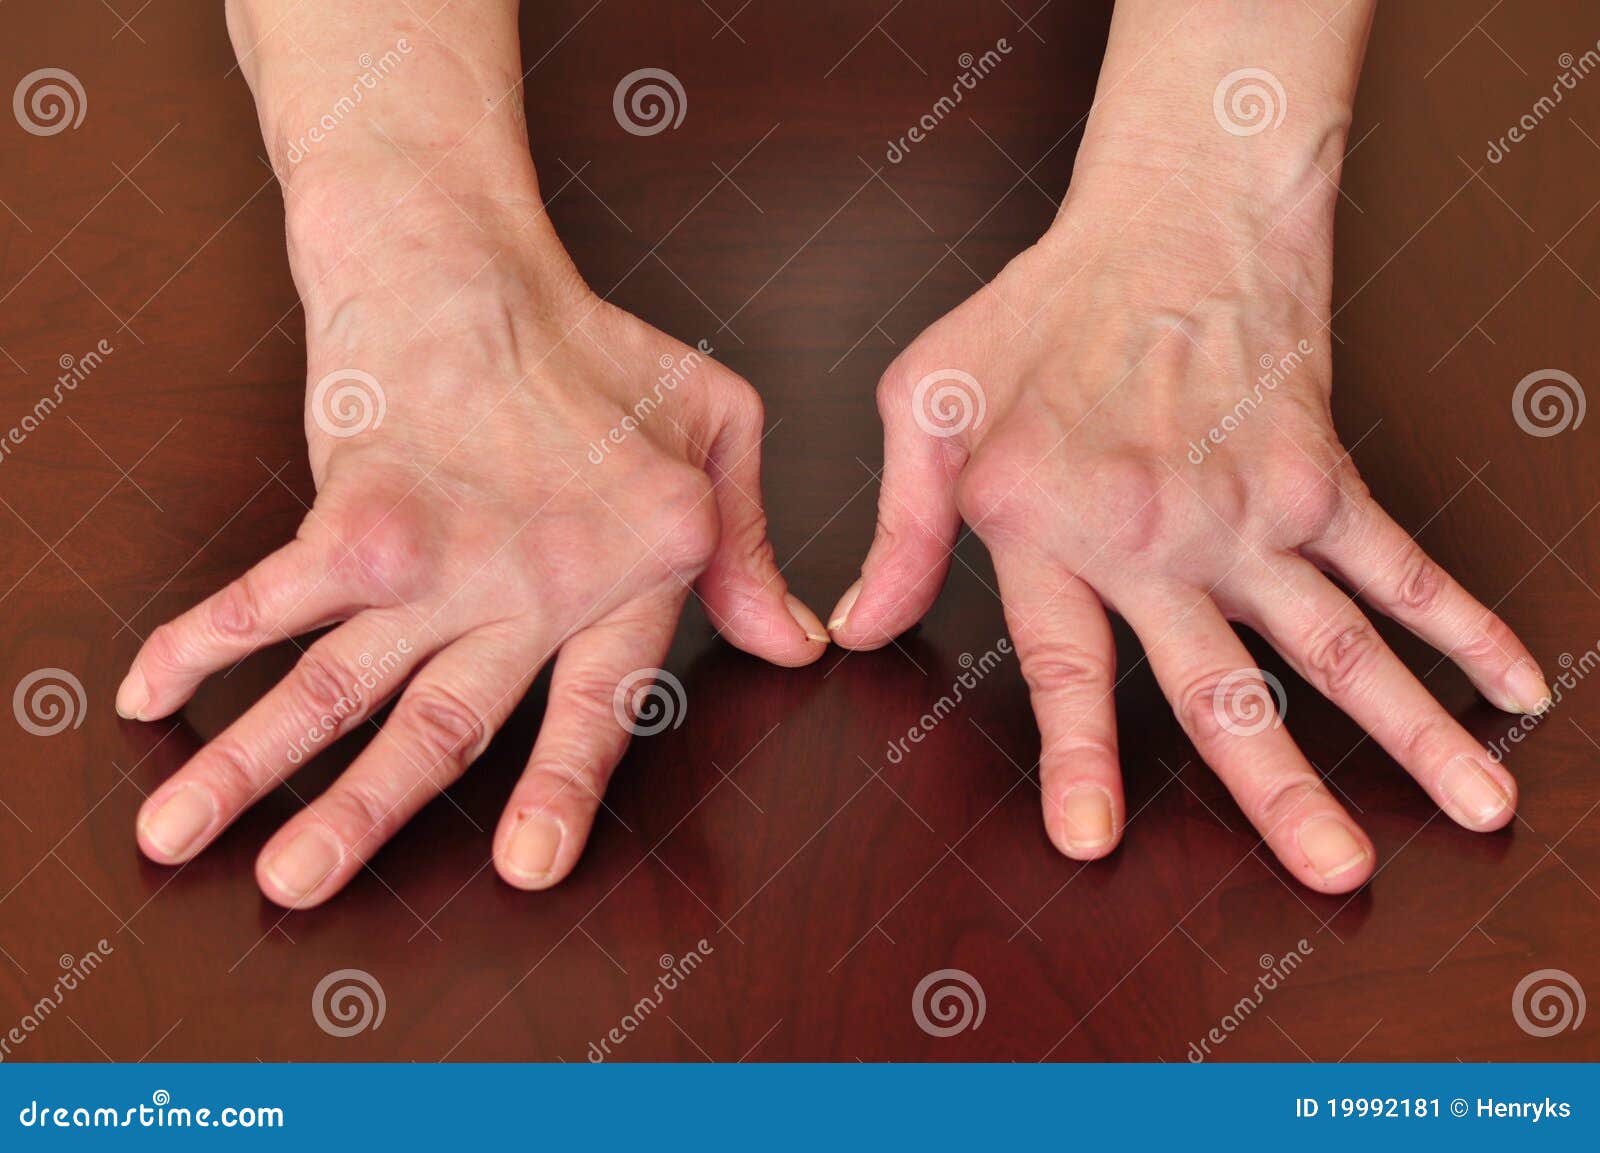 остеопороз пальцев рук симптомы фото